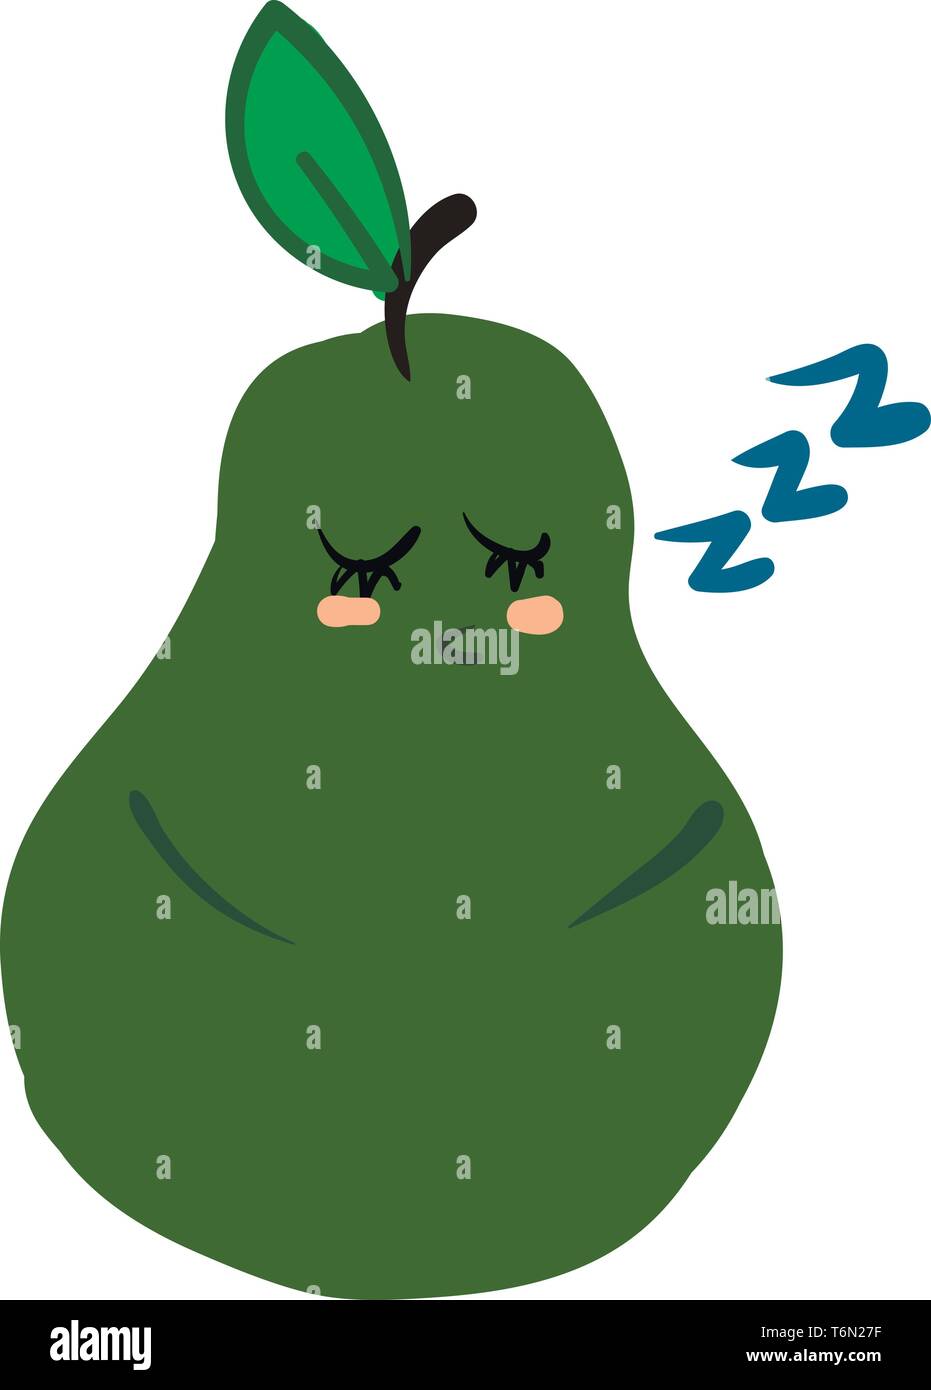 Clipart eine grüne Birne gekrönt mit einem kurzen braunen Stiel und ein einzelnes Blatt mit seinen Augen geschlossen Schnarchen beim Schlafen vector Farbe, Zeichnung oder Stock Vektor